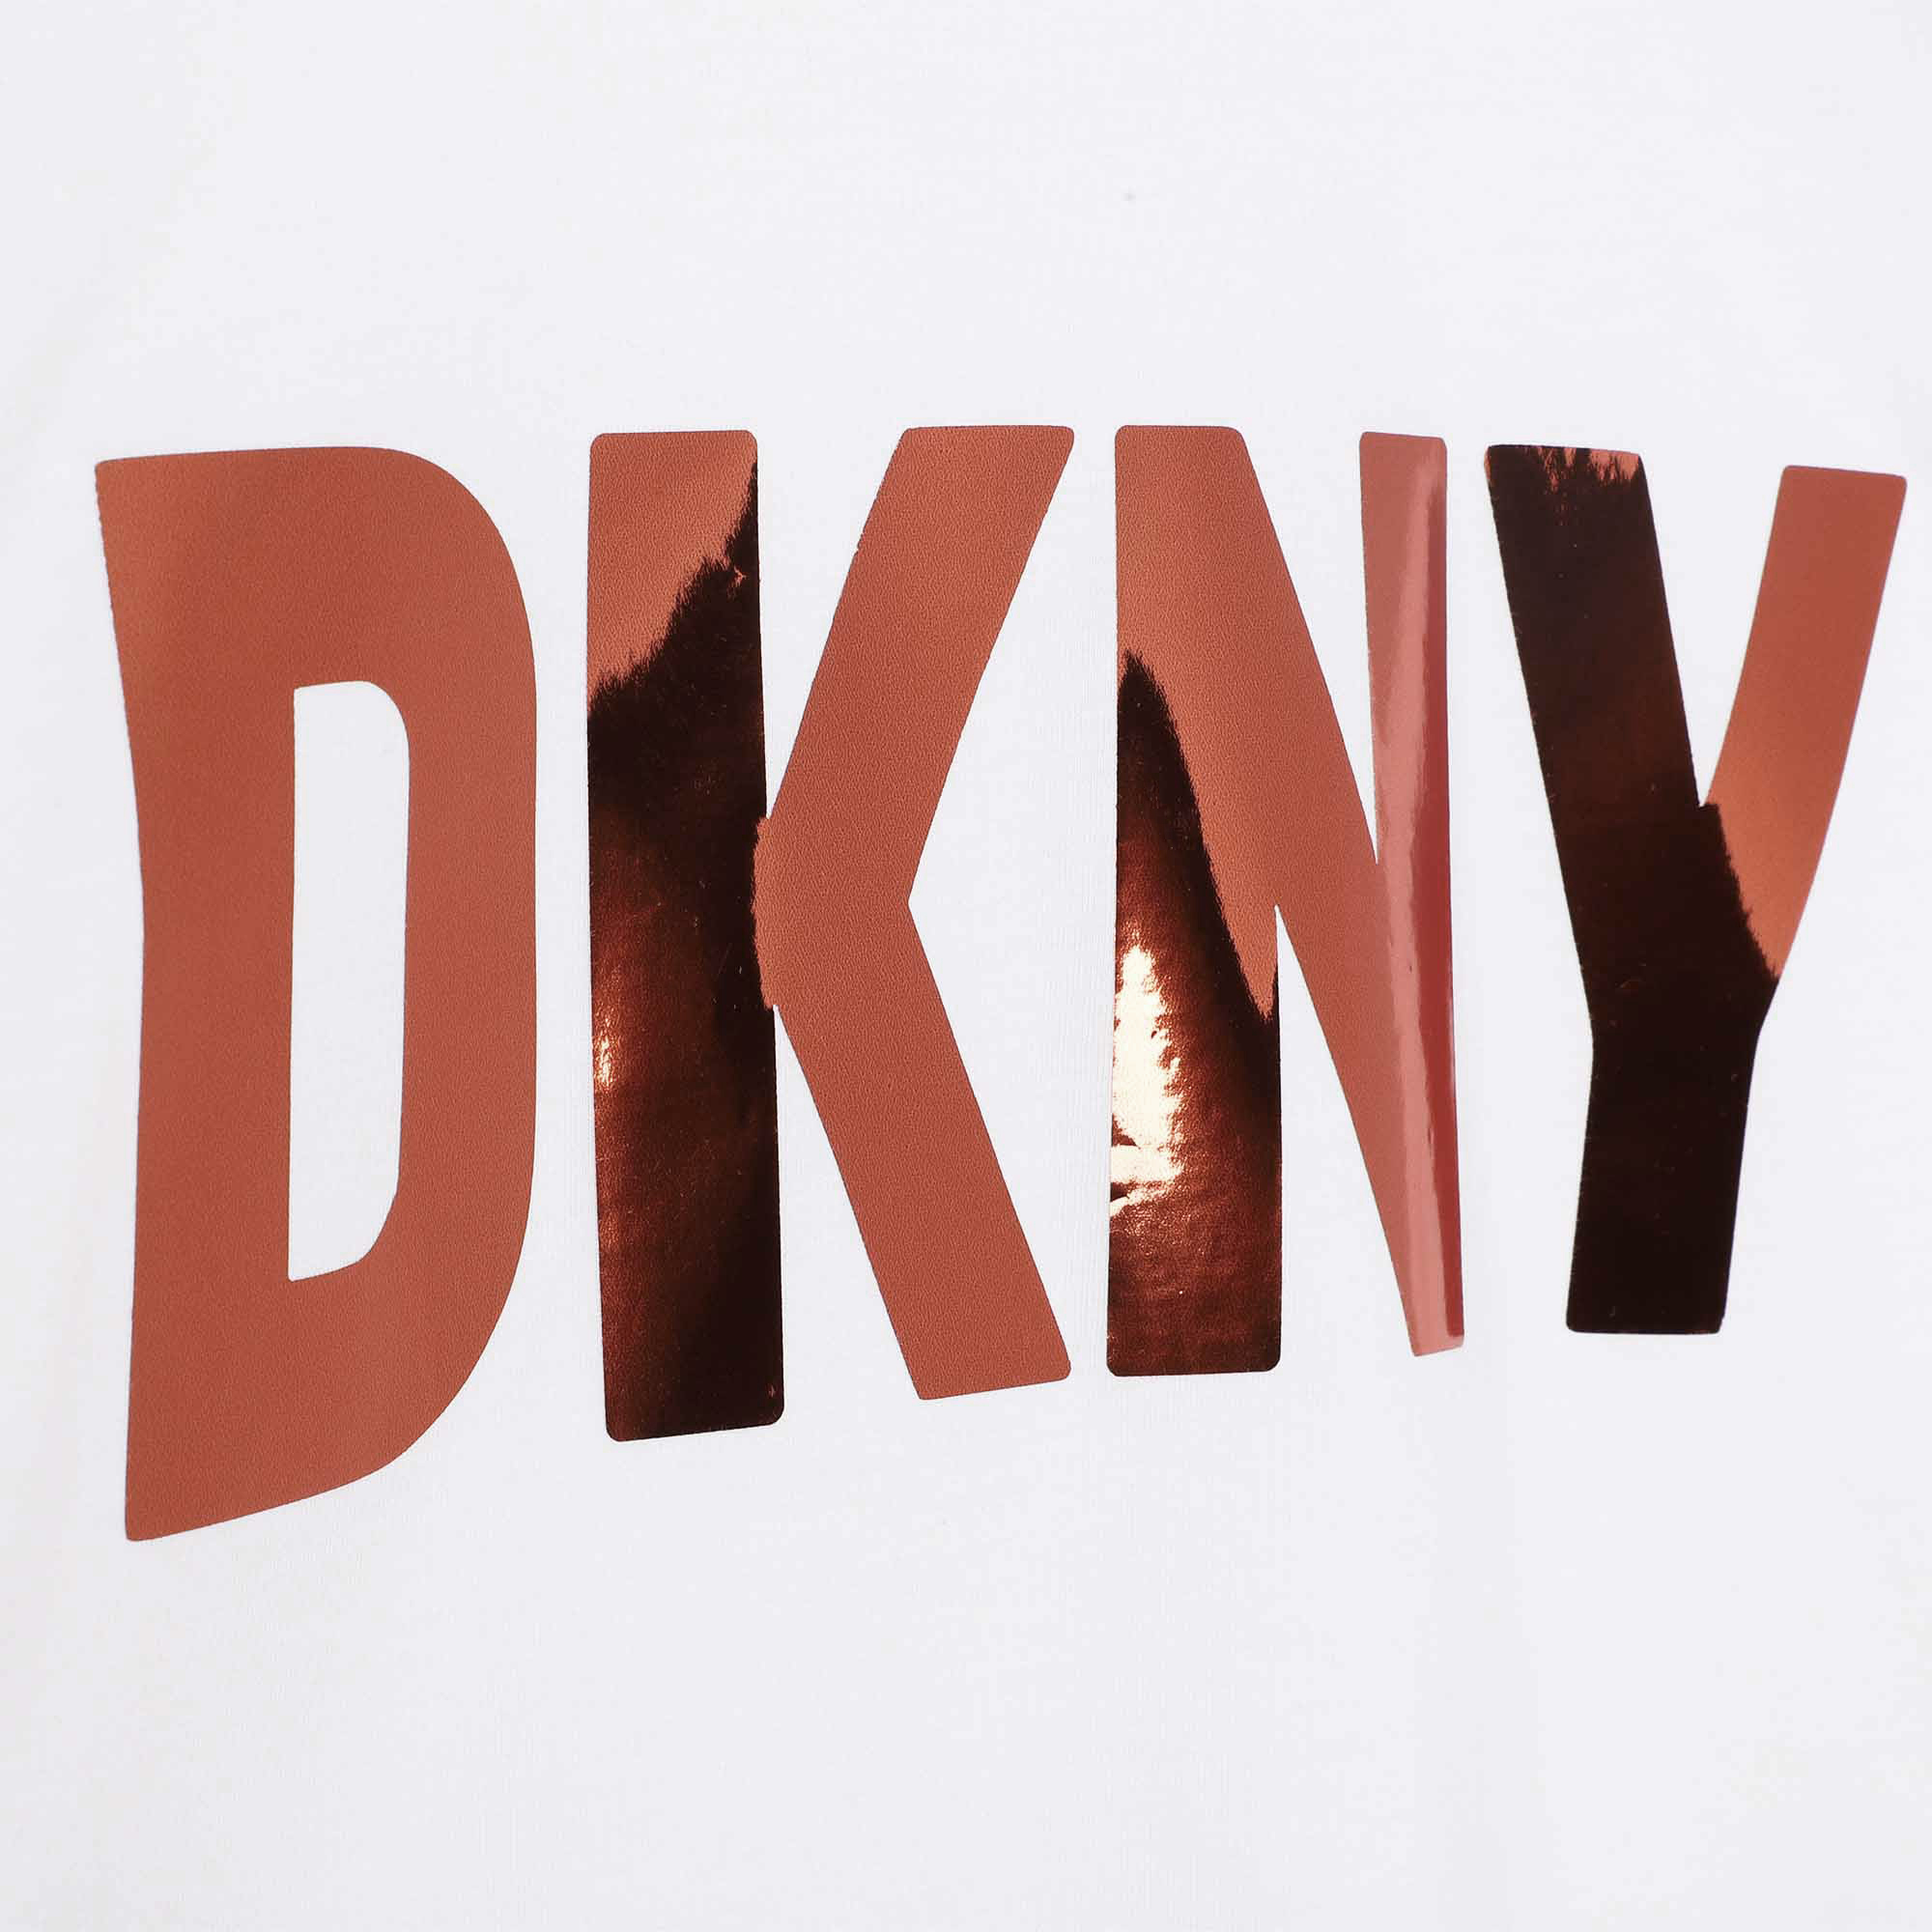 T-shirt in cotone DKNY Per BAMBINA